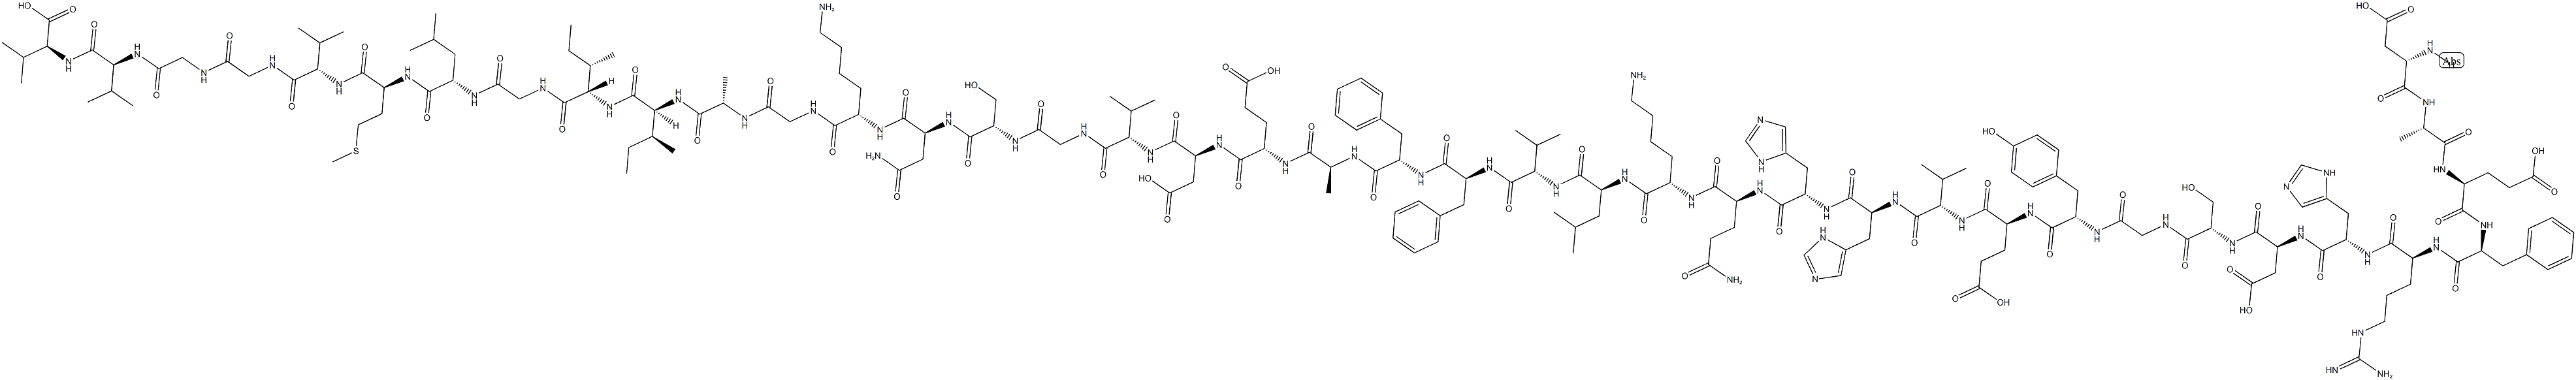 BETA淀粉样蛋白片段1-40,CAS:131438-79-4